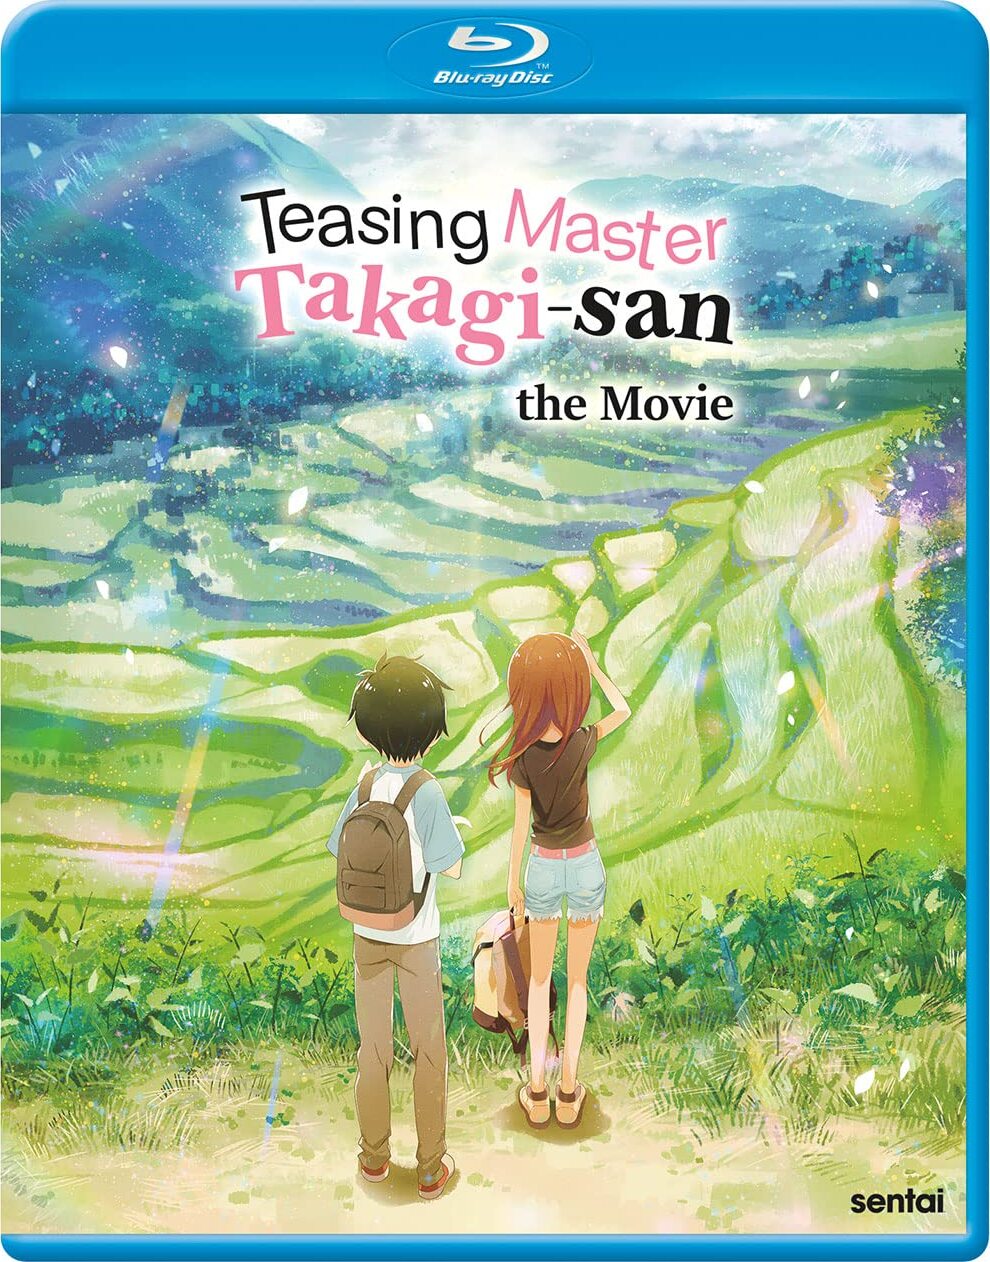 Anunciado live-action de Teasing Master Takagi-san